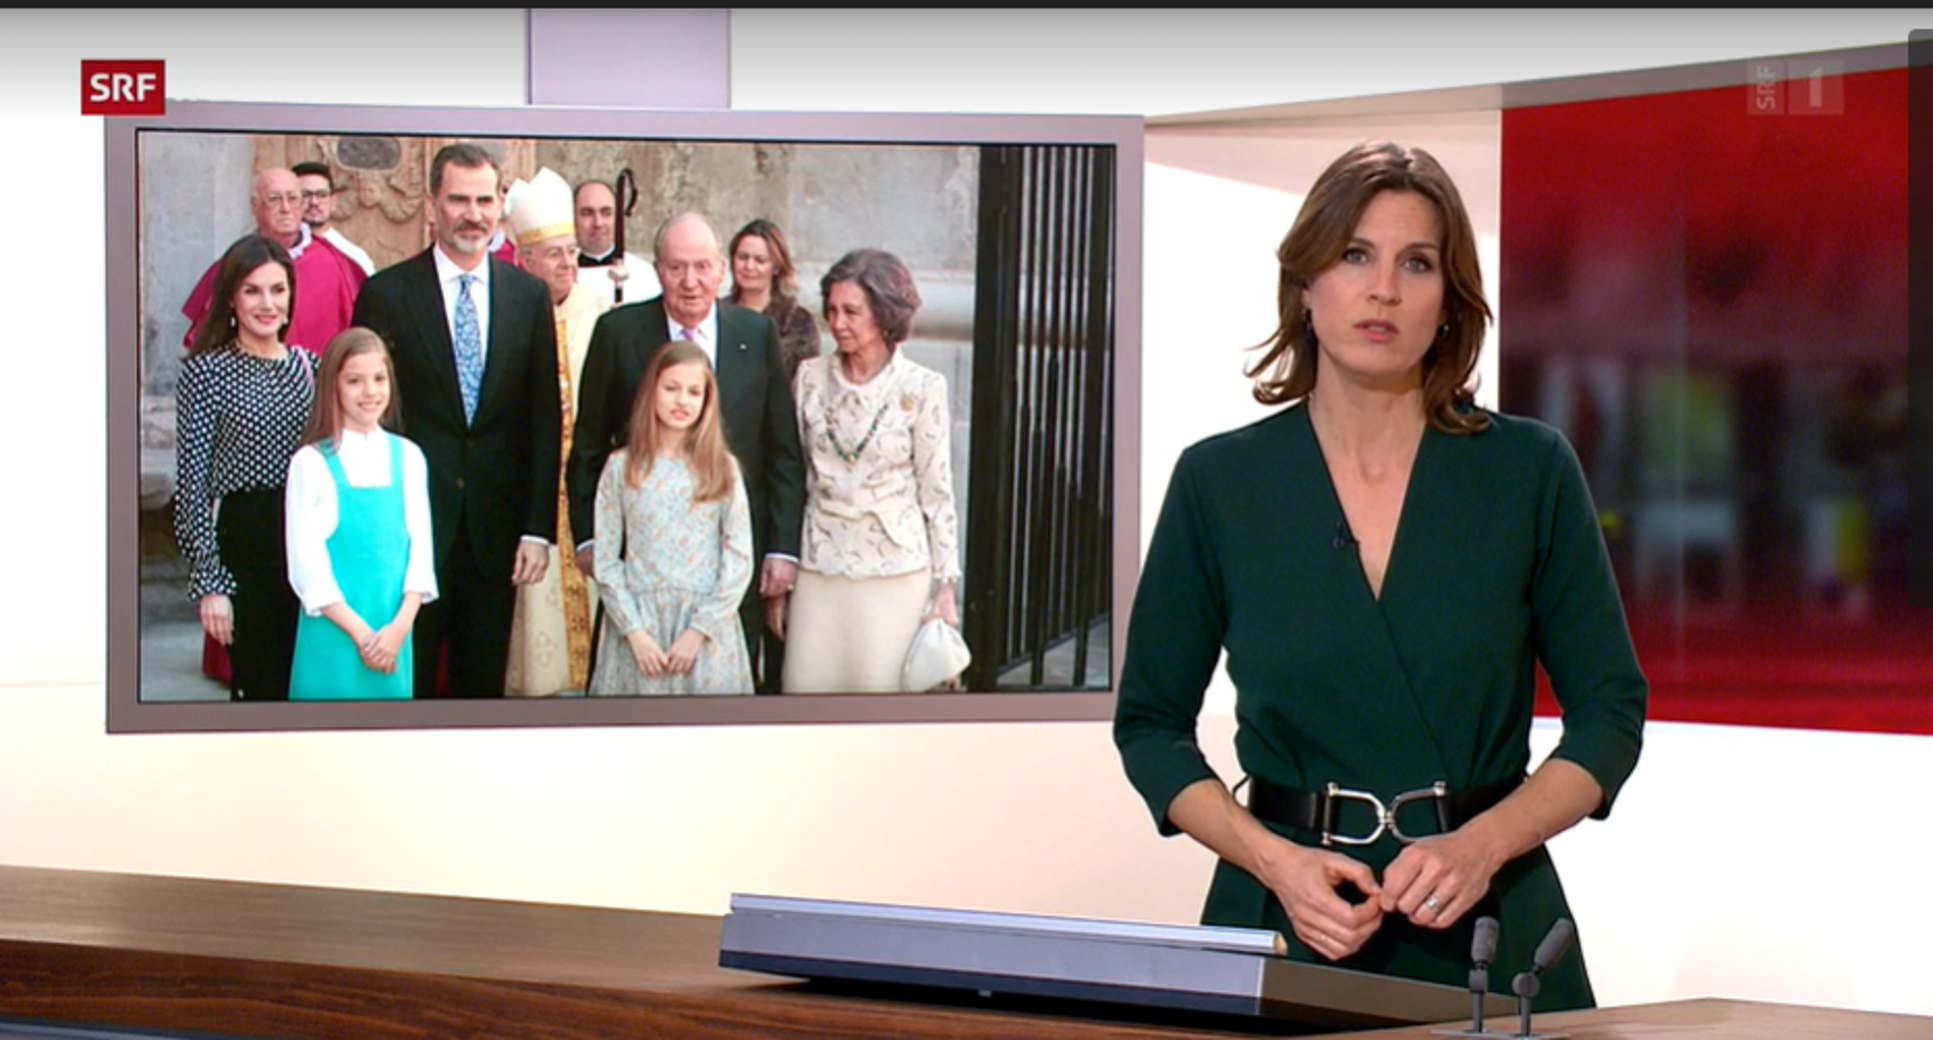 La TV suïssa explica com el PSOE protegeix la monarquia espanyola: "Són lleials"